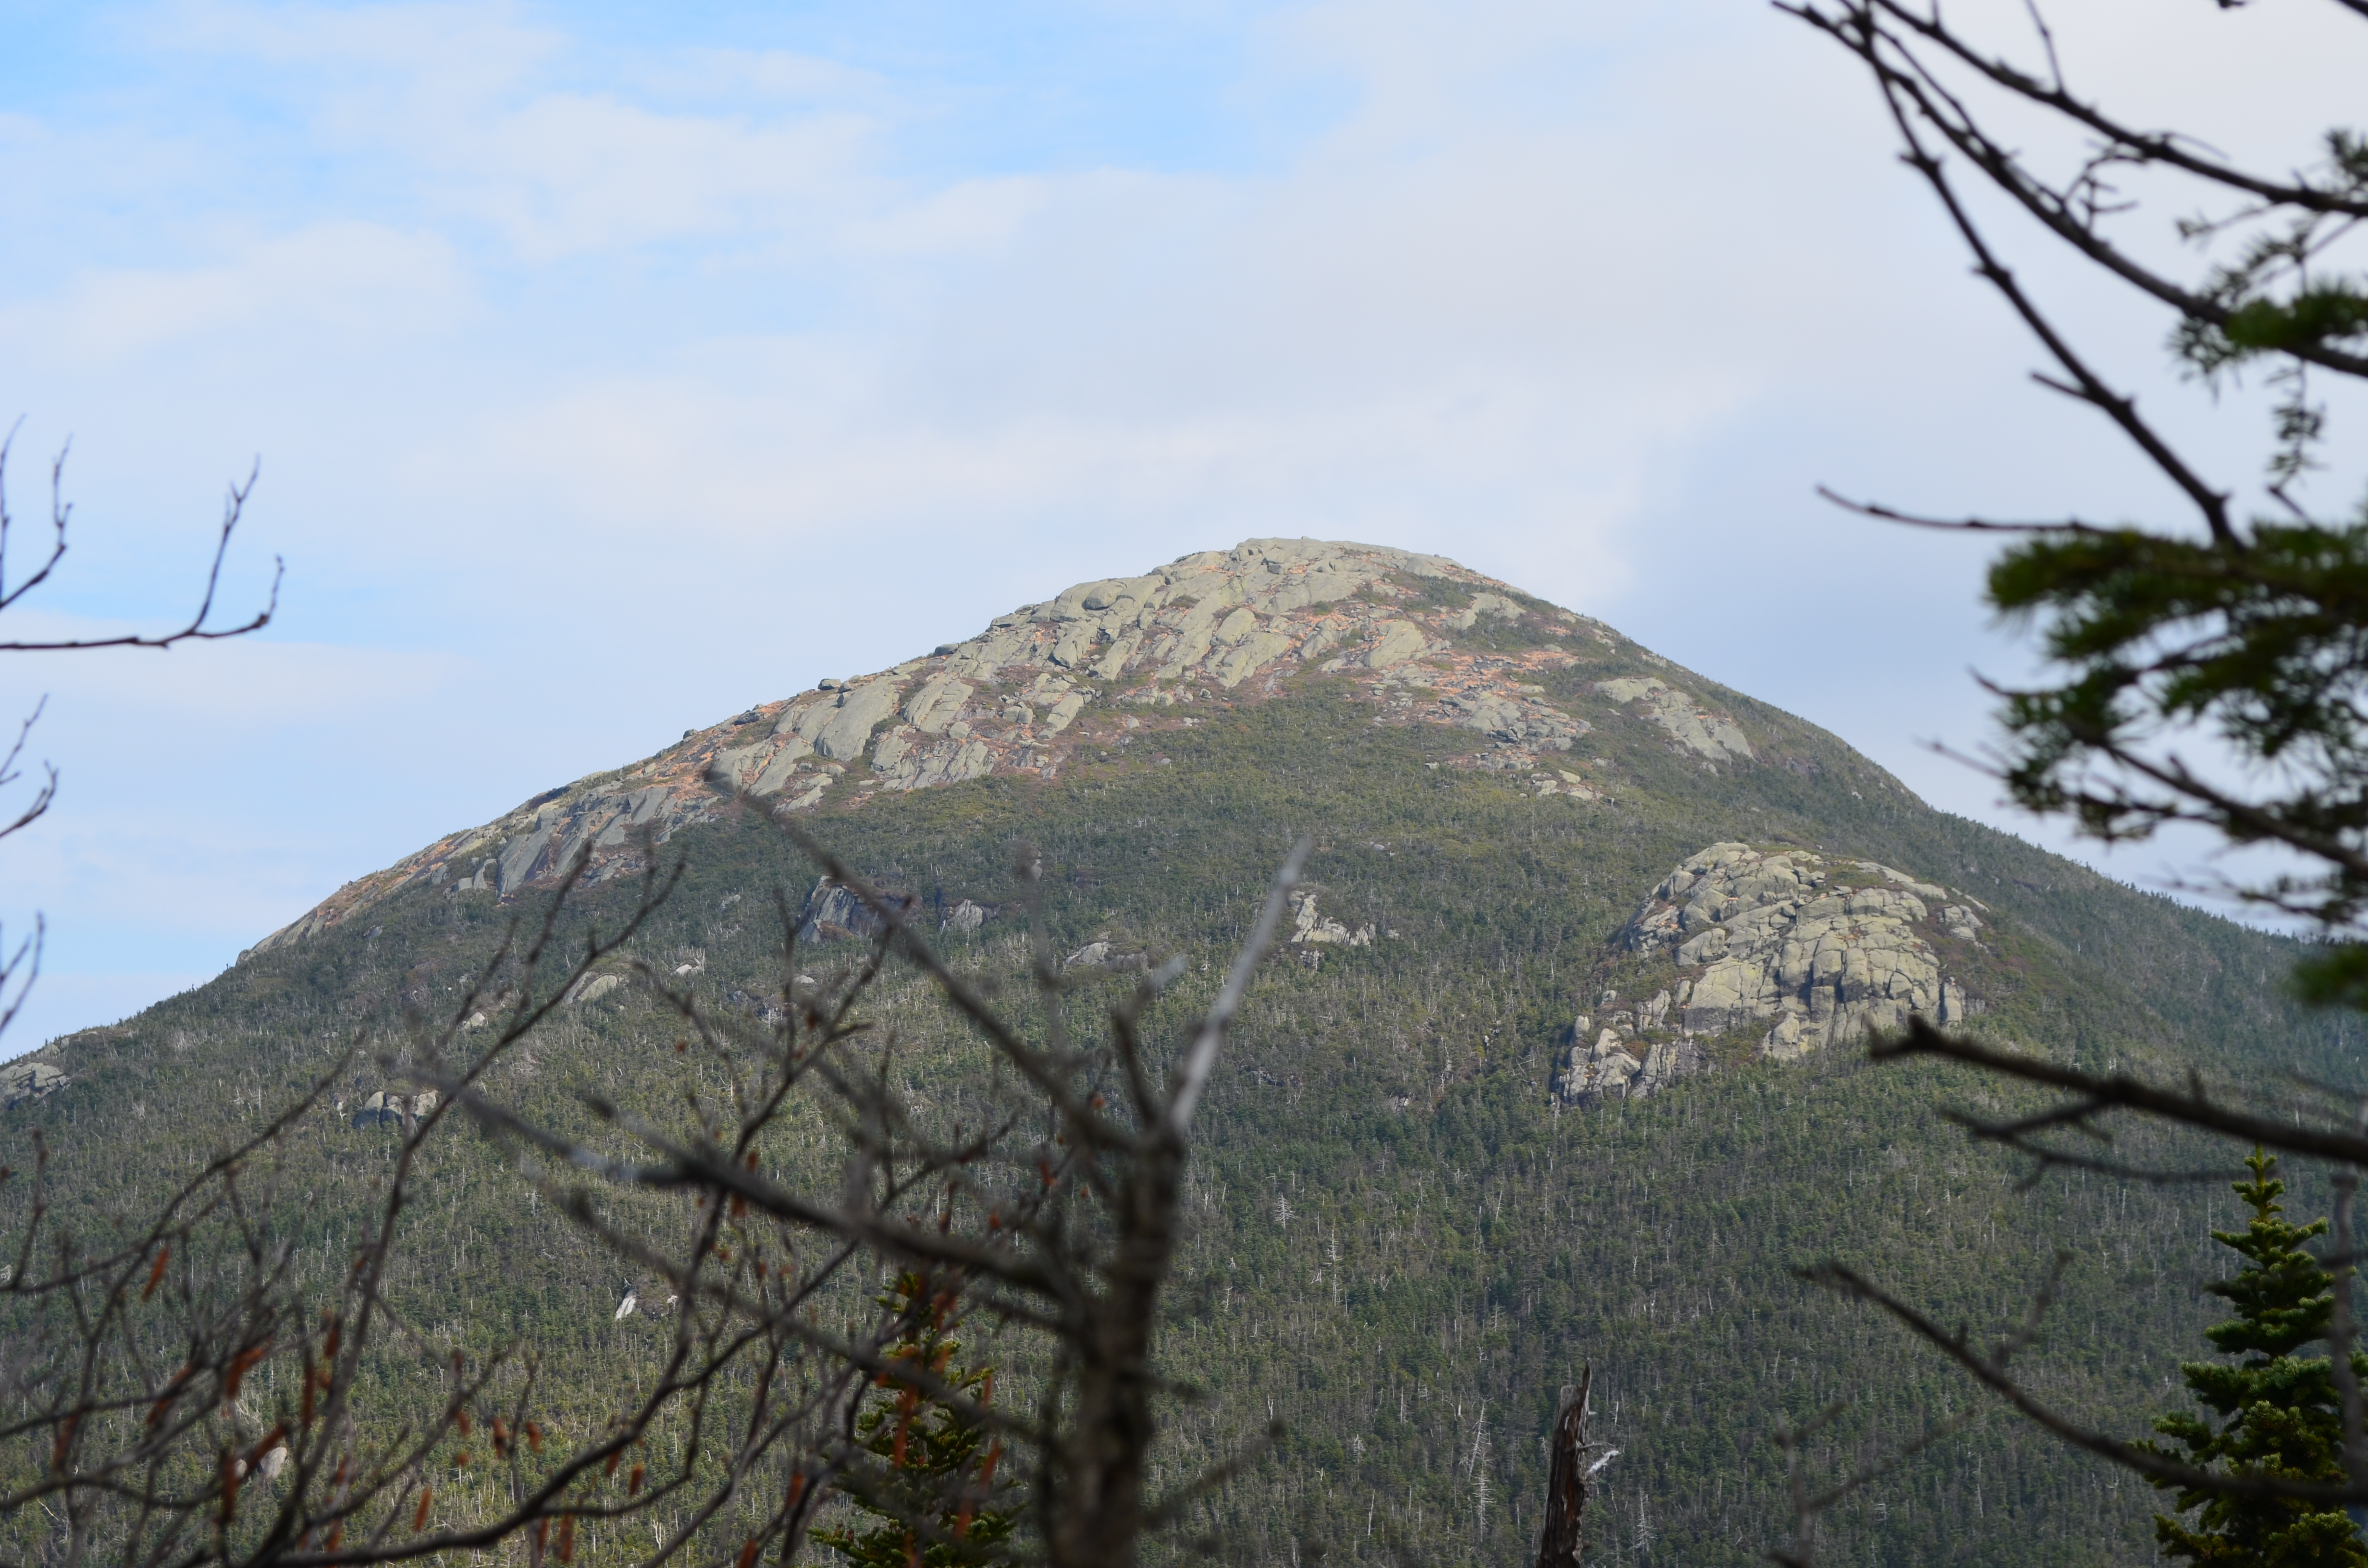 Iroquois Peak and Shepherd's Tooth